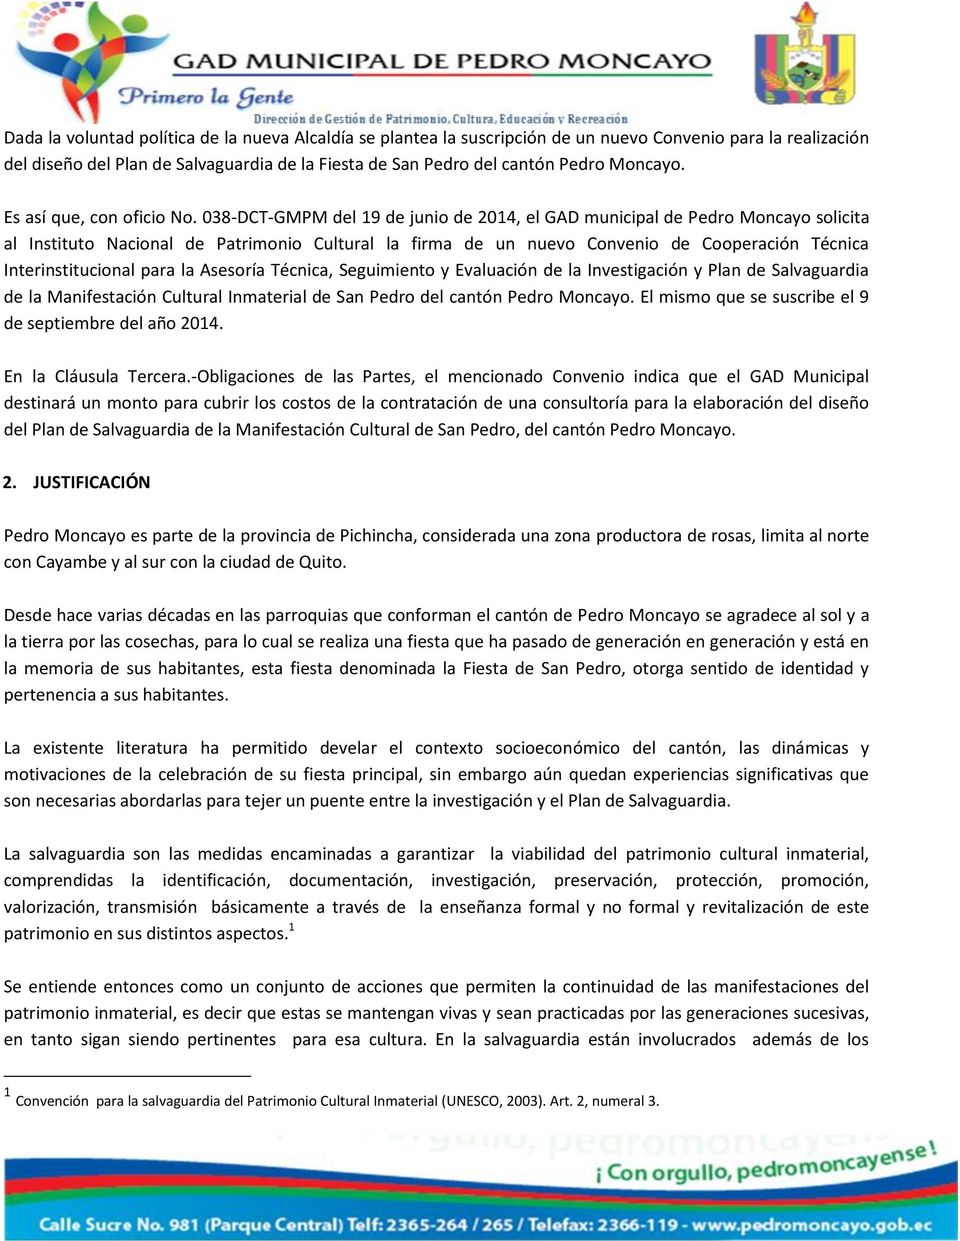 038-DCT-GMPM del 19 de junio de 2014, el GAD municipal de Pedro Moncayo solicita al Instituto Nacional de Patrimonio Cultural la firma de un nuevo Convenio de Cooperación Técnica Interinstitucional